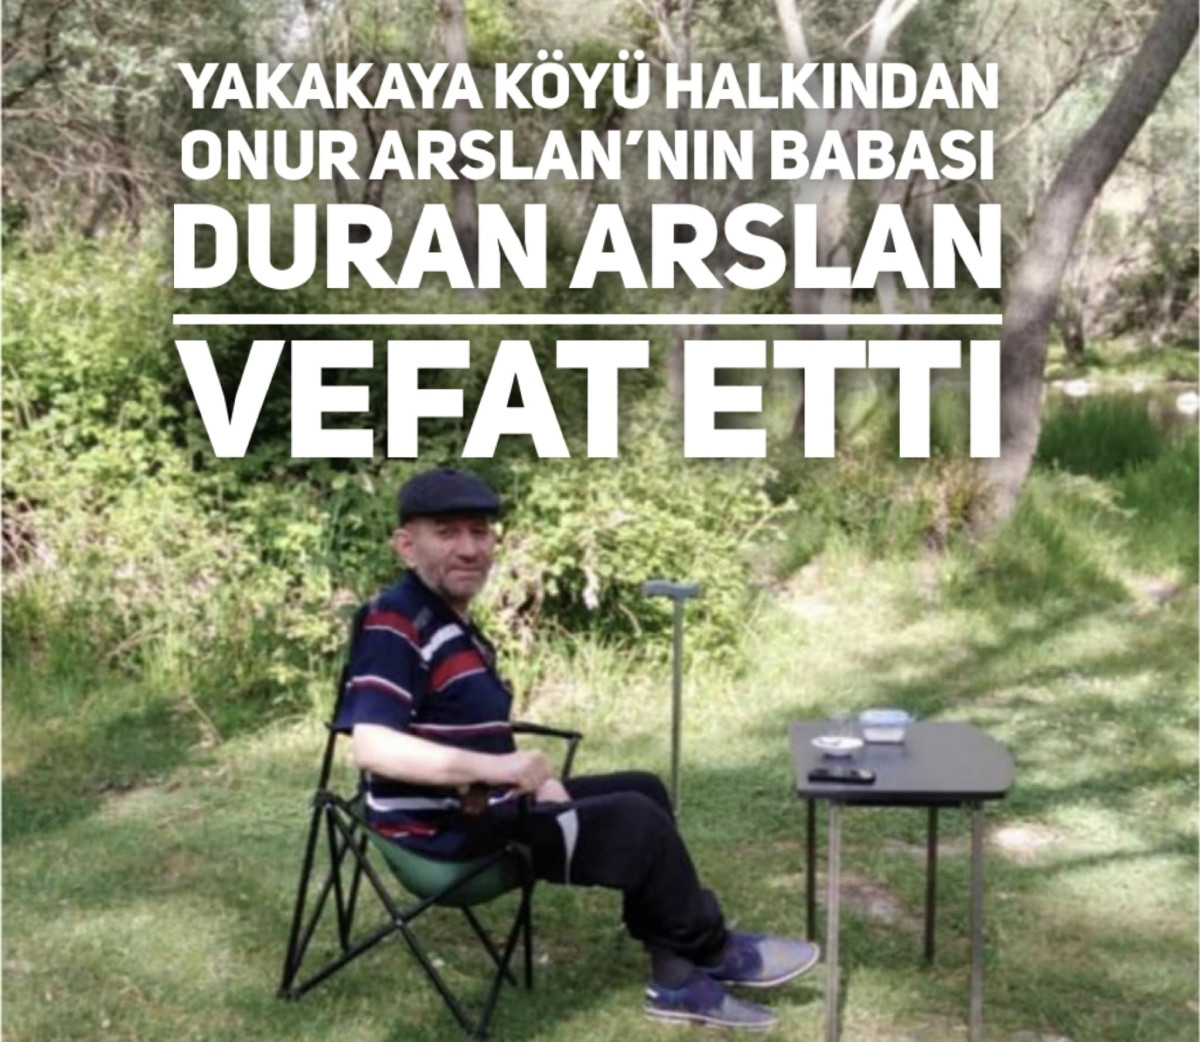 Yakakaya Köyü Halkından Duran ARSLAN Vefat Etti.